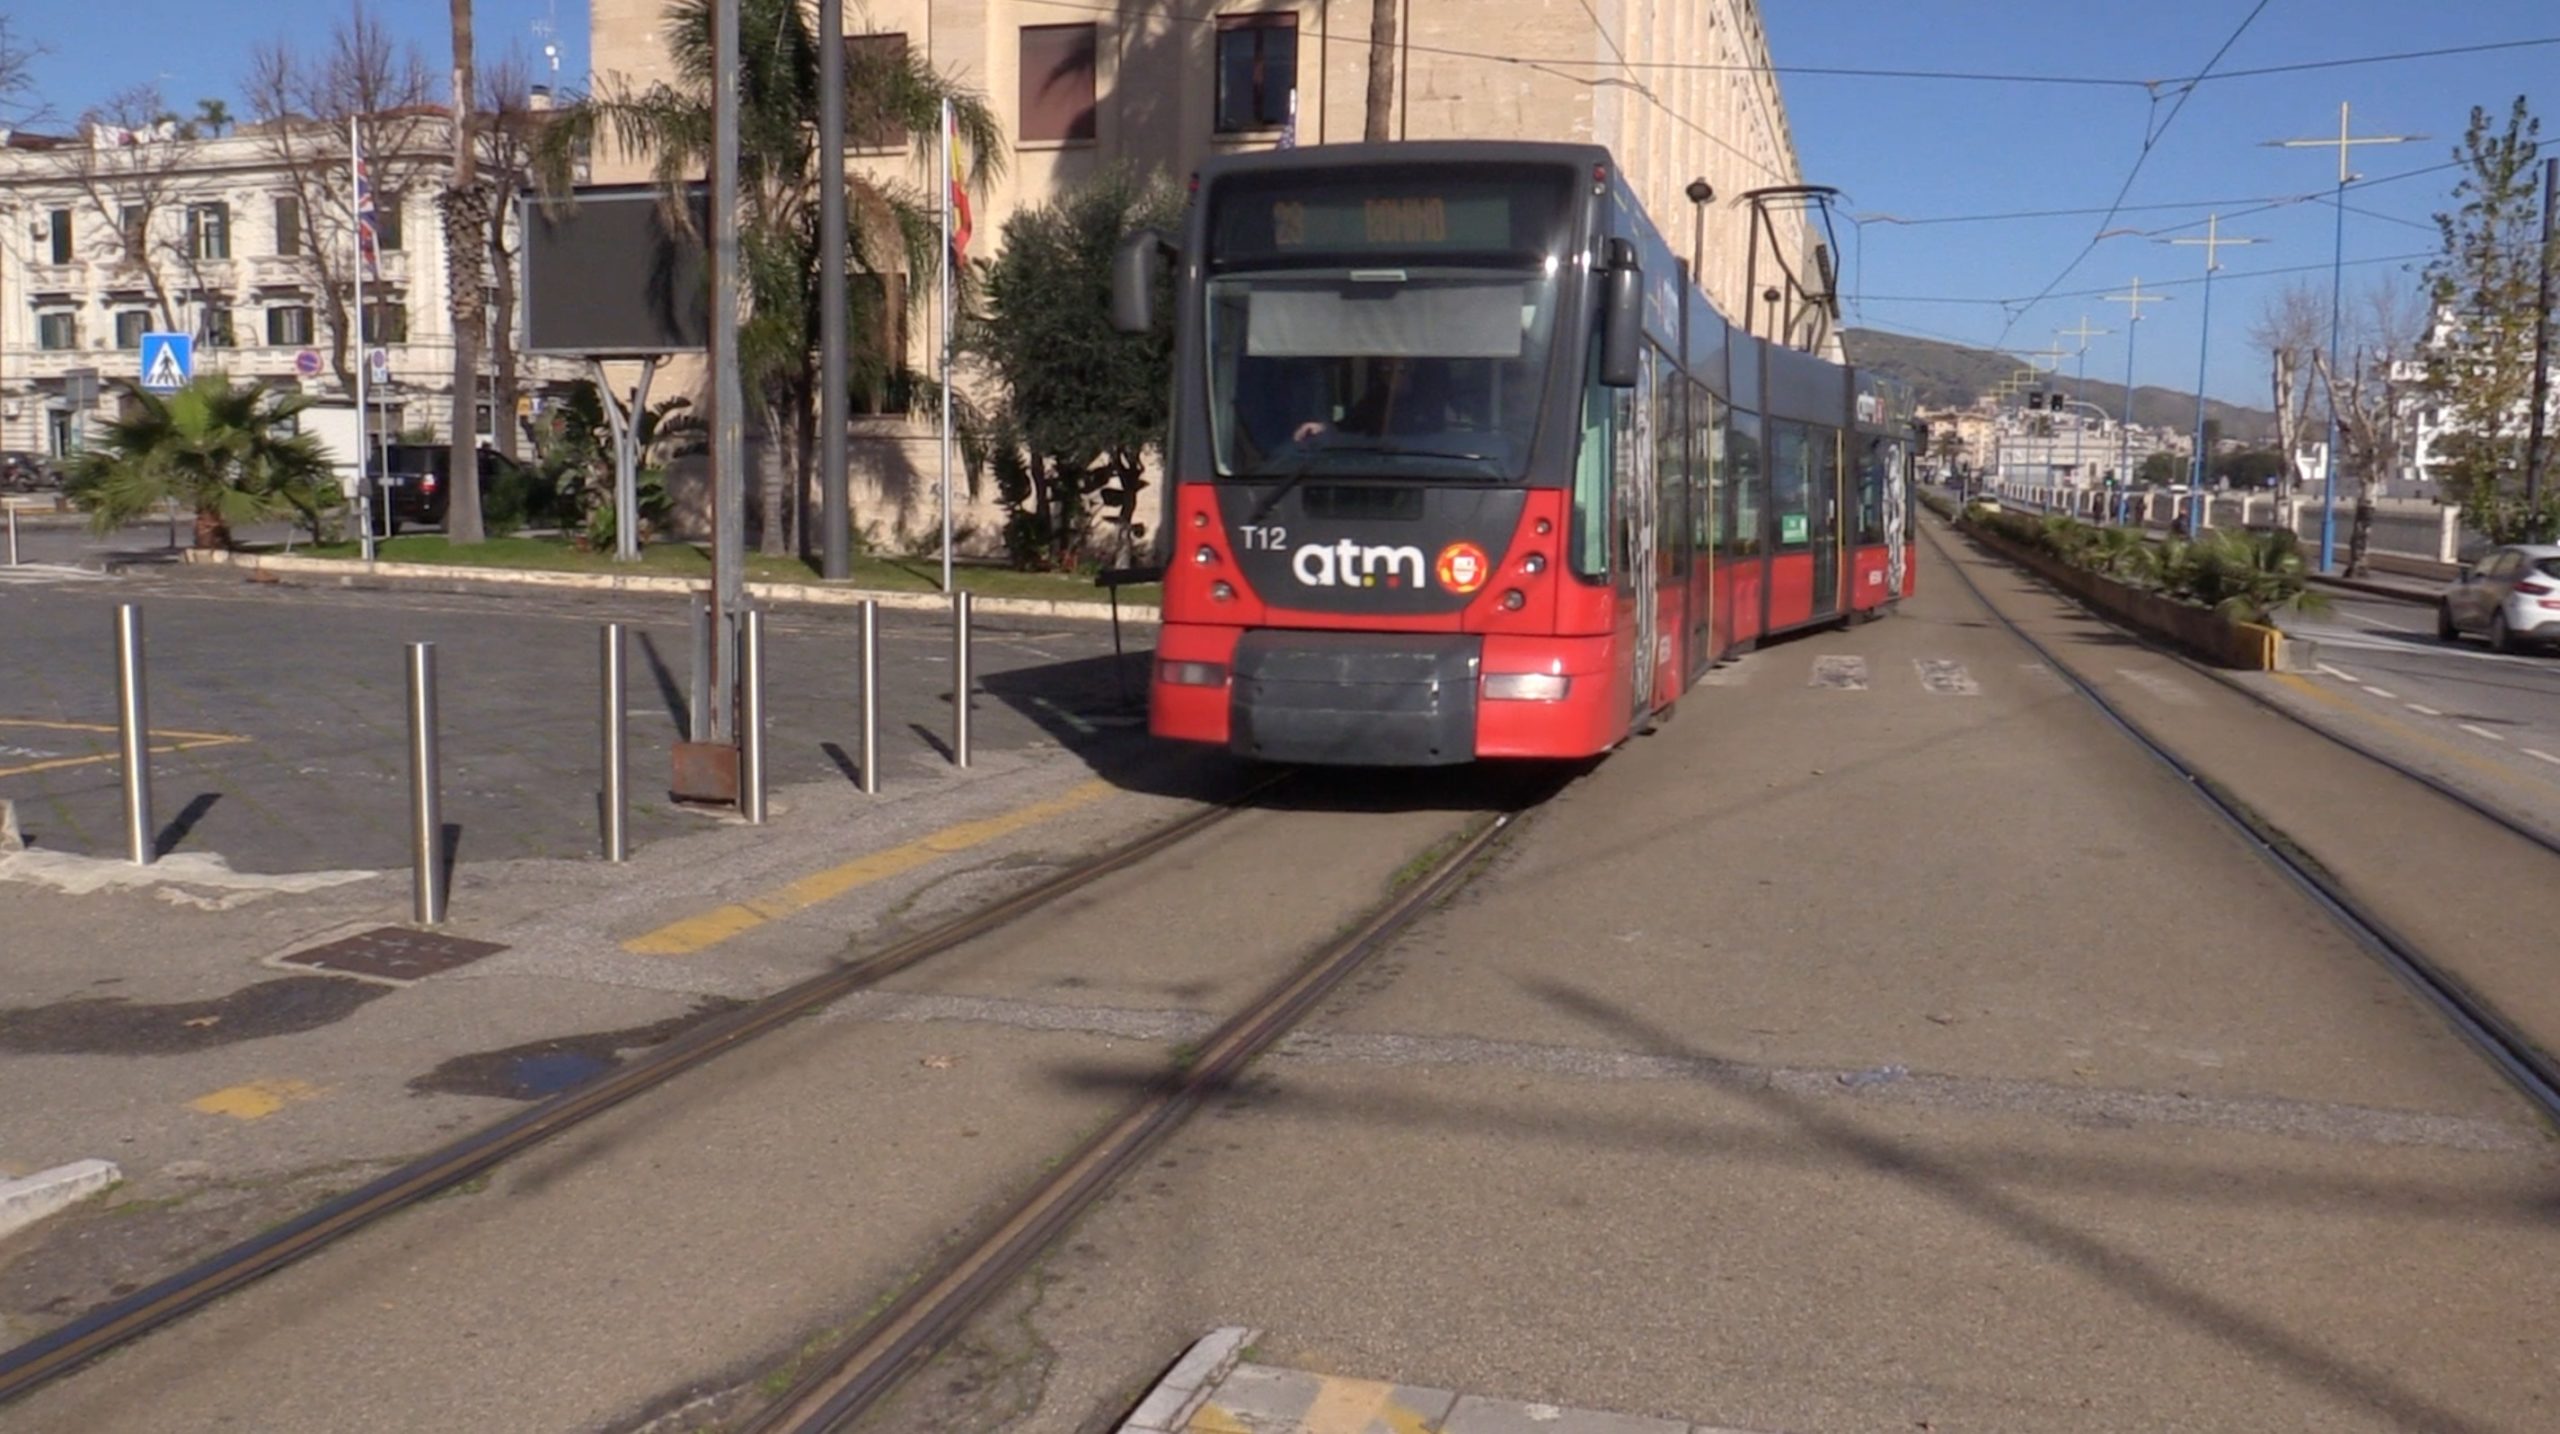 Mobilita a Messina shuttle apprezzato attesa tram e bus lunga scaled